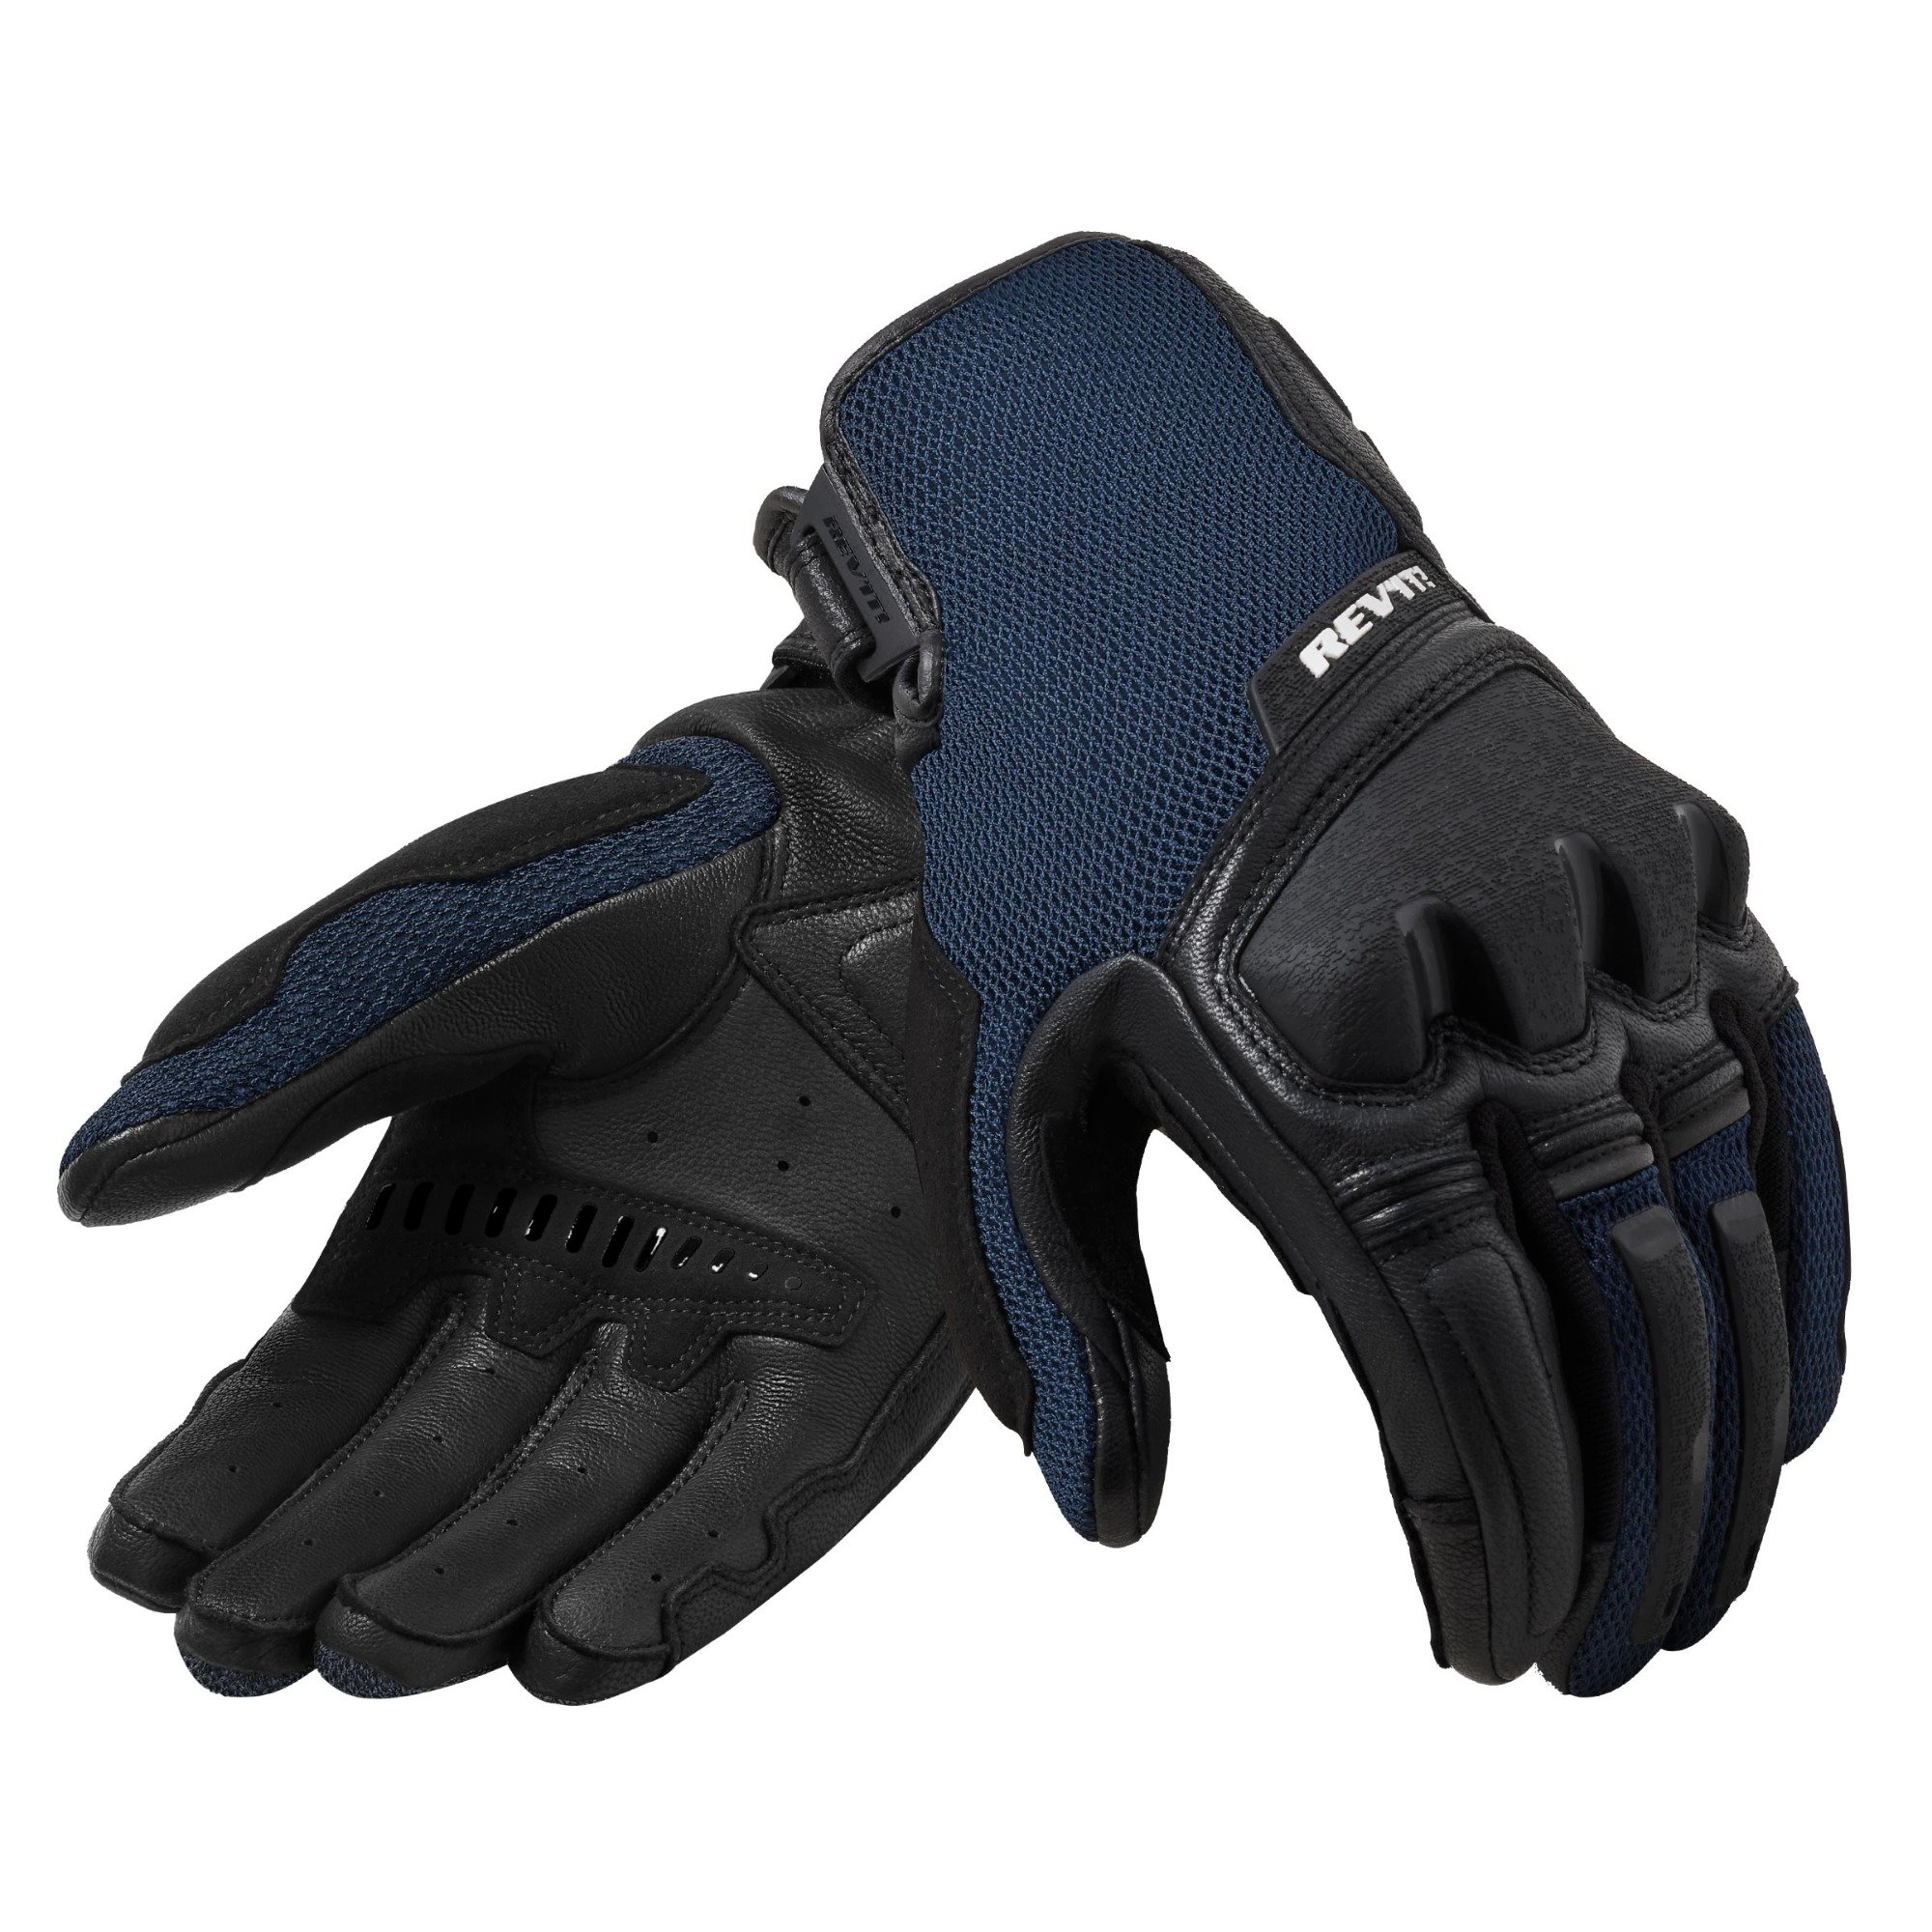 Image of REV'IT! Duty Schwarz Blau Handschuhe Größe 2XL